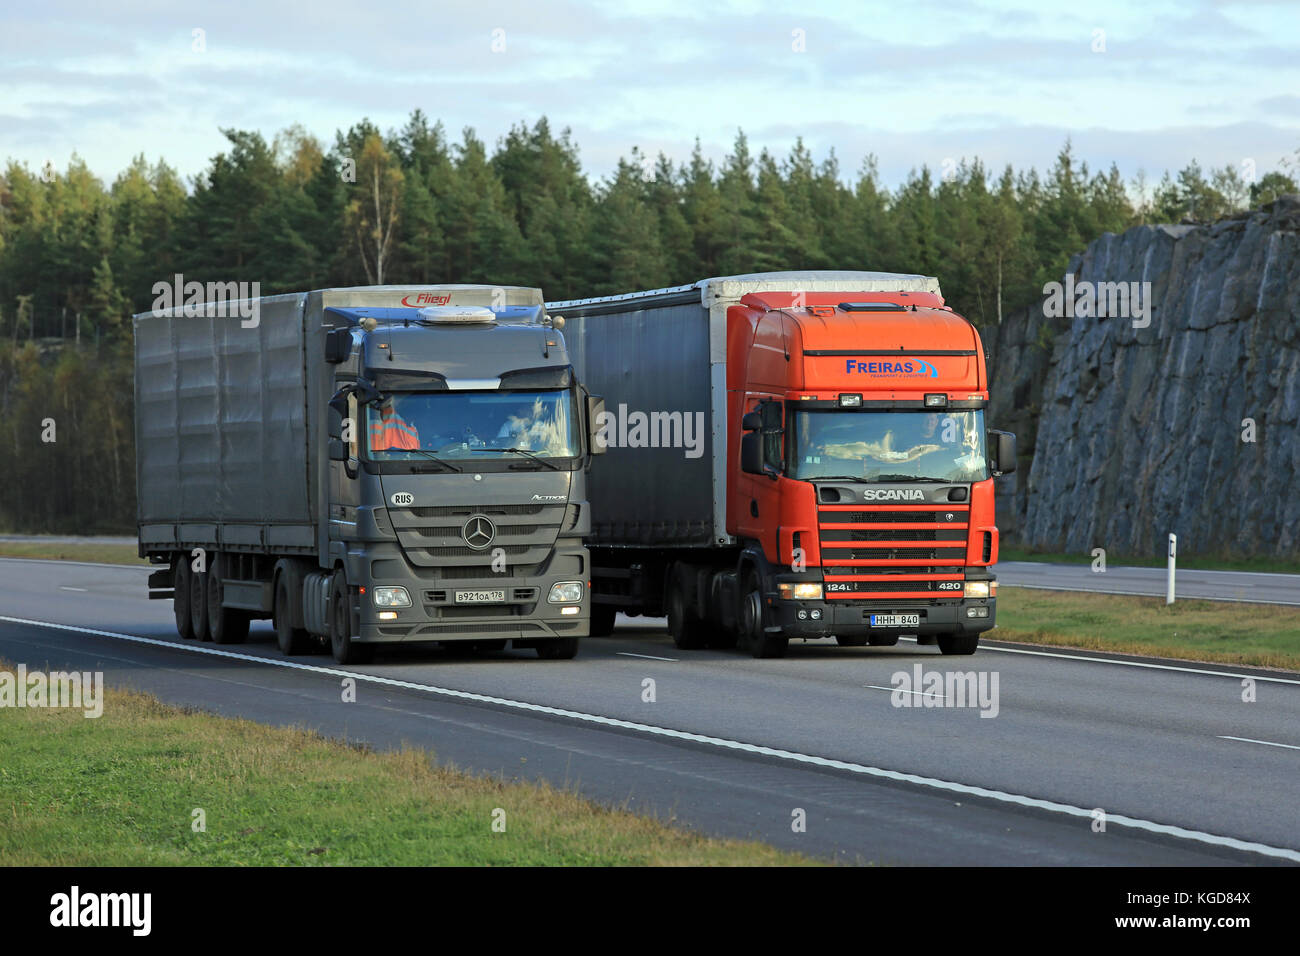 Paimio, Finlandia - 16 ottobre 2015: scania 124l semi supera un altro carrello su autostrada. carrelli elevatori con carico pesante possono essere molto più lento in salita. Foto Stock